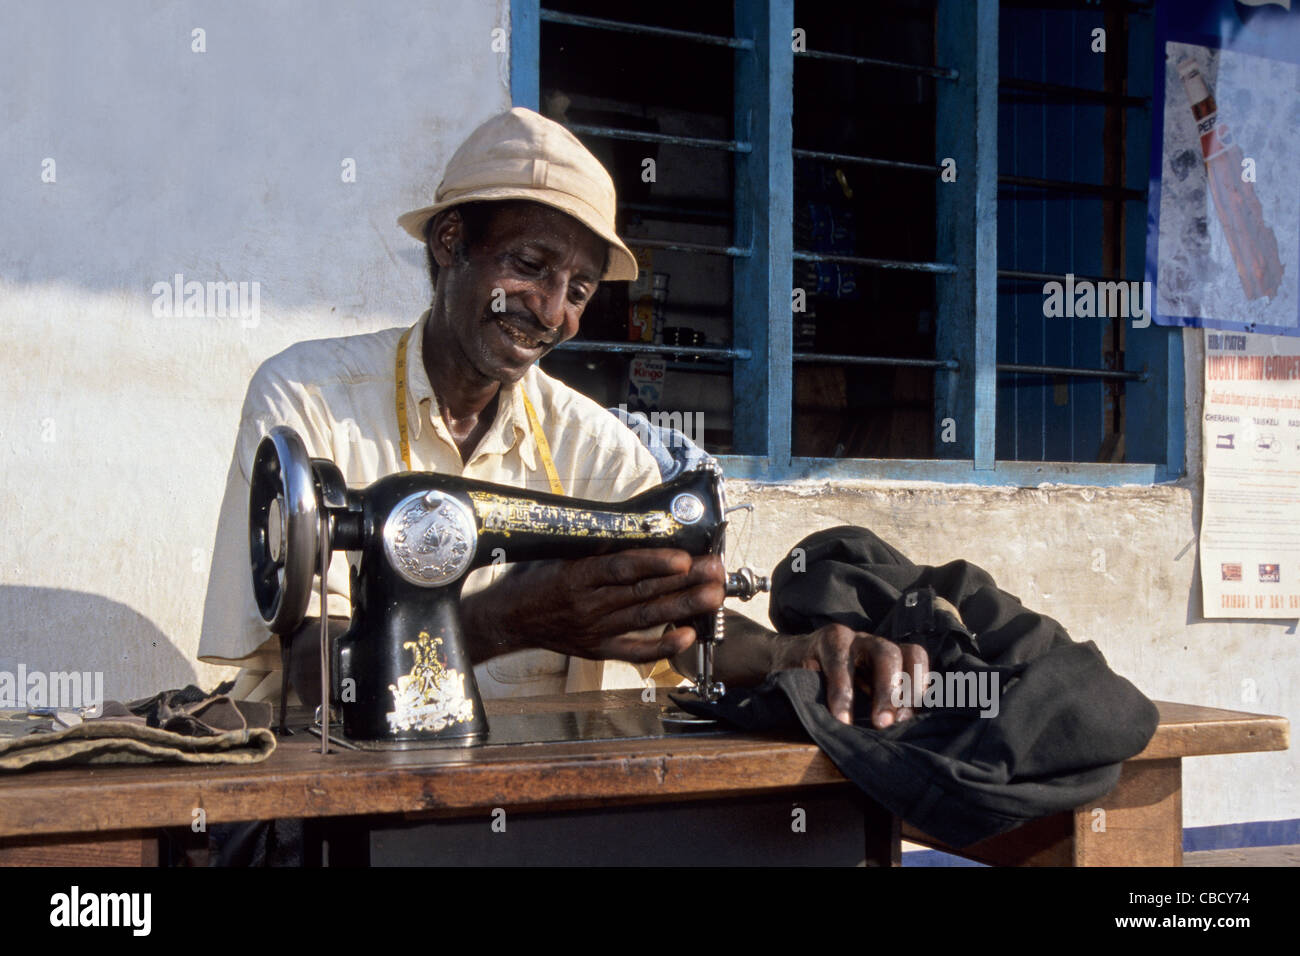 Tailor working infront of a kiosk, Boma Ngombe, Kilimanjaro Region Tanzania Stock Photo